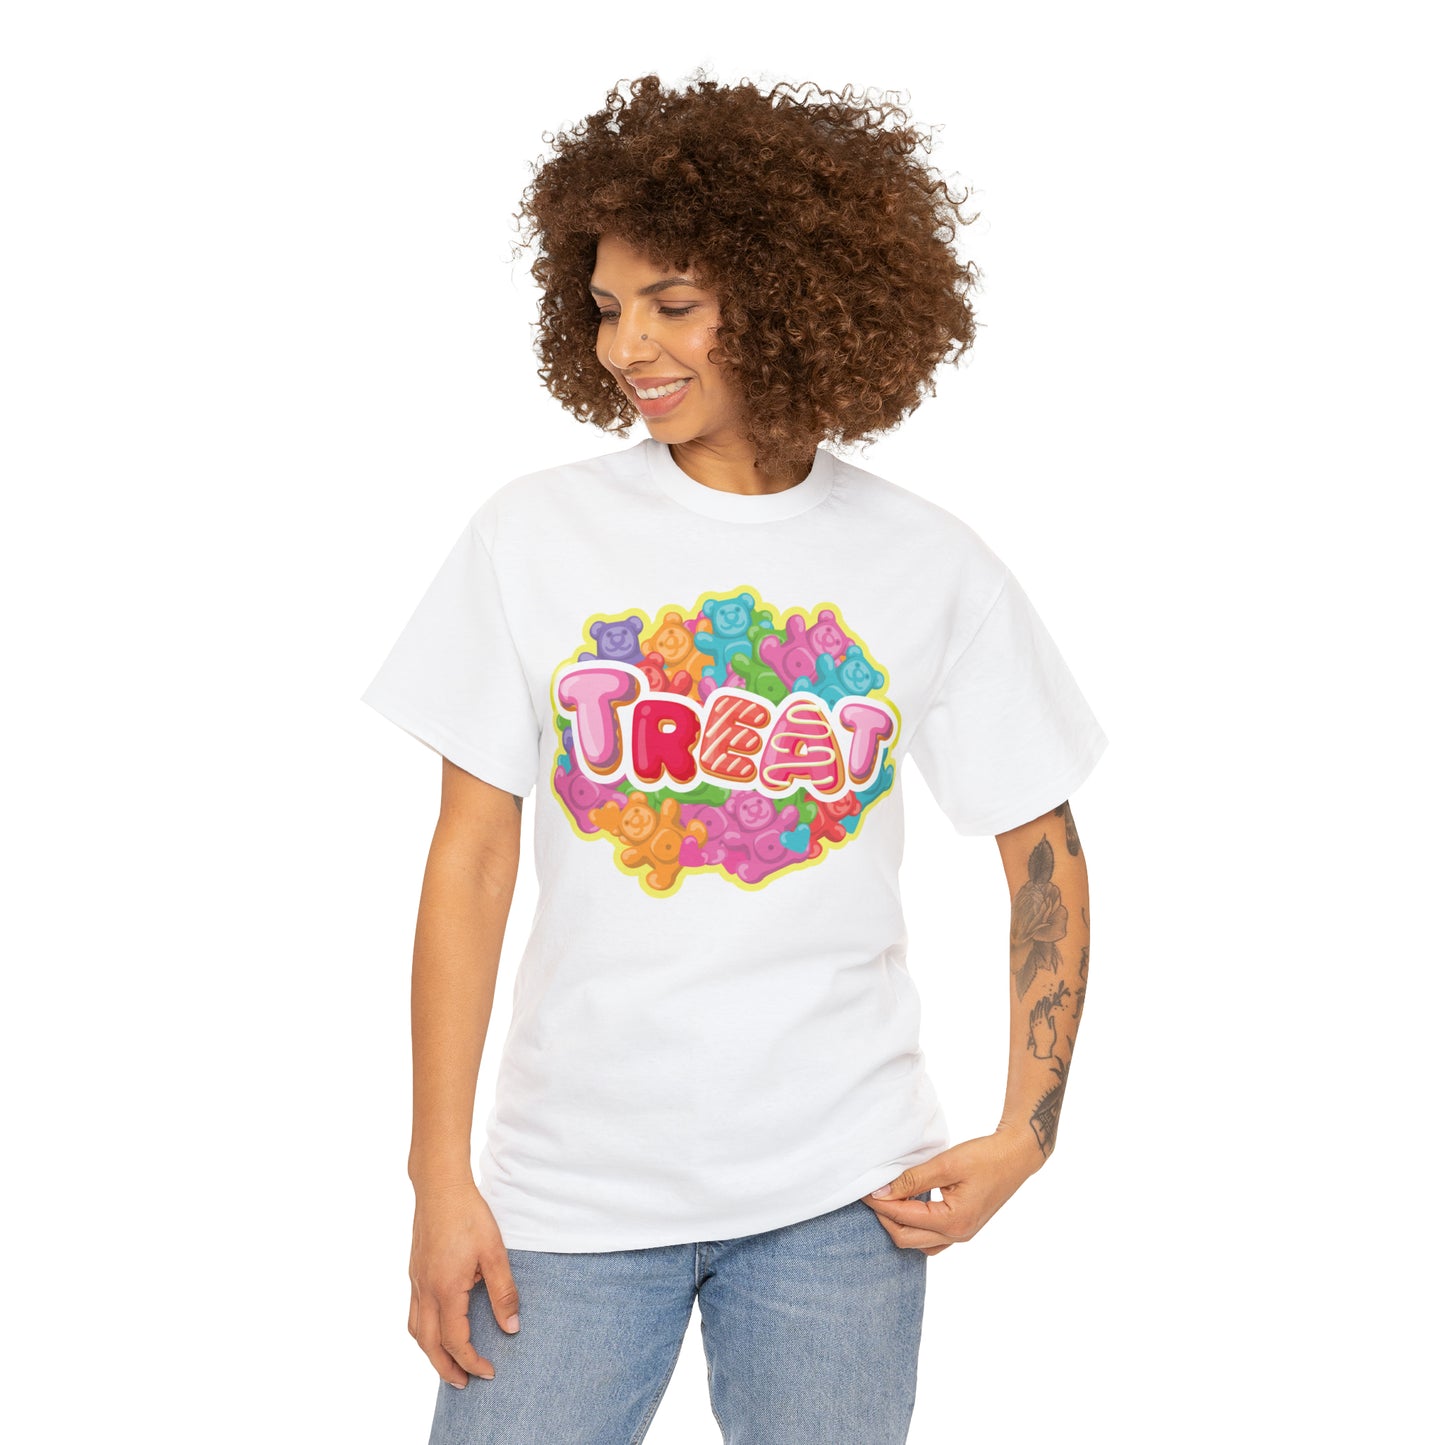 Treat Gummy Bear Logo Unisex Heavy Cotton Tee